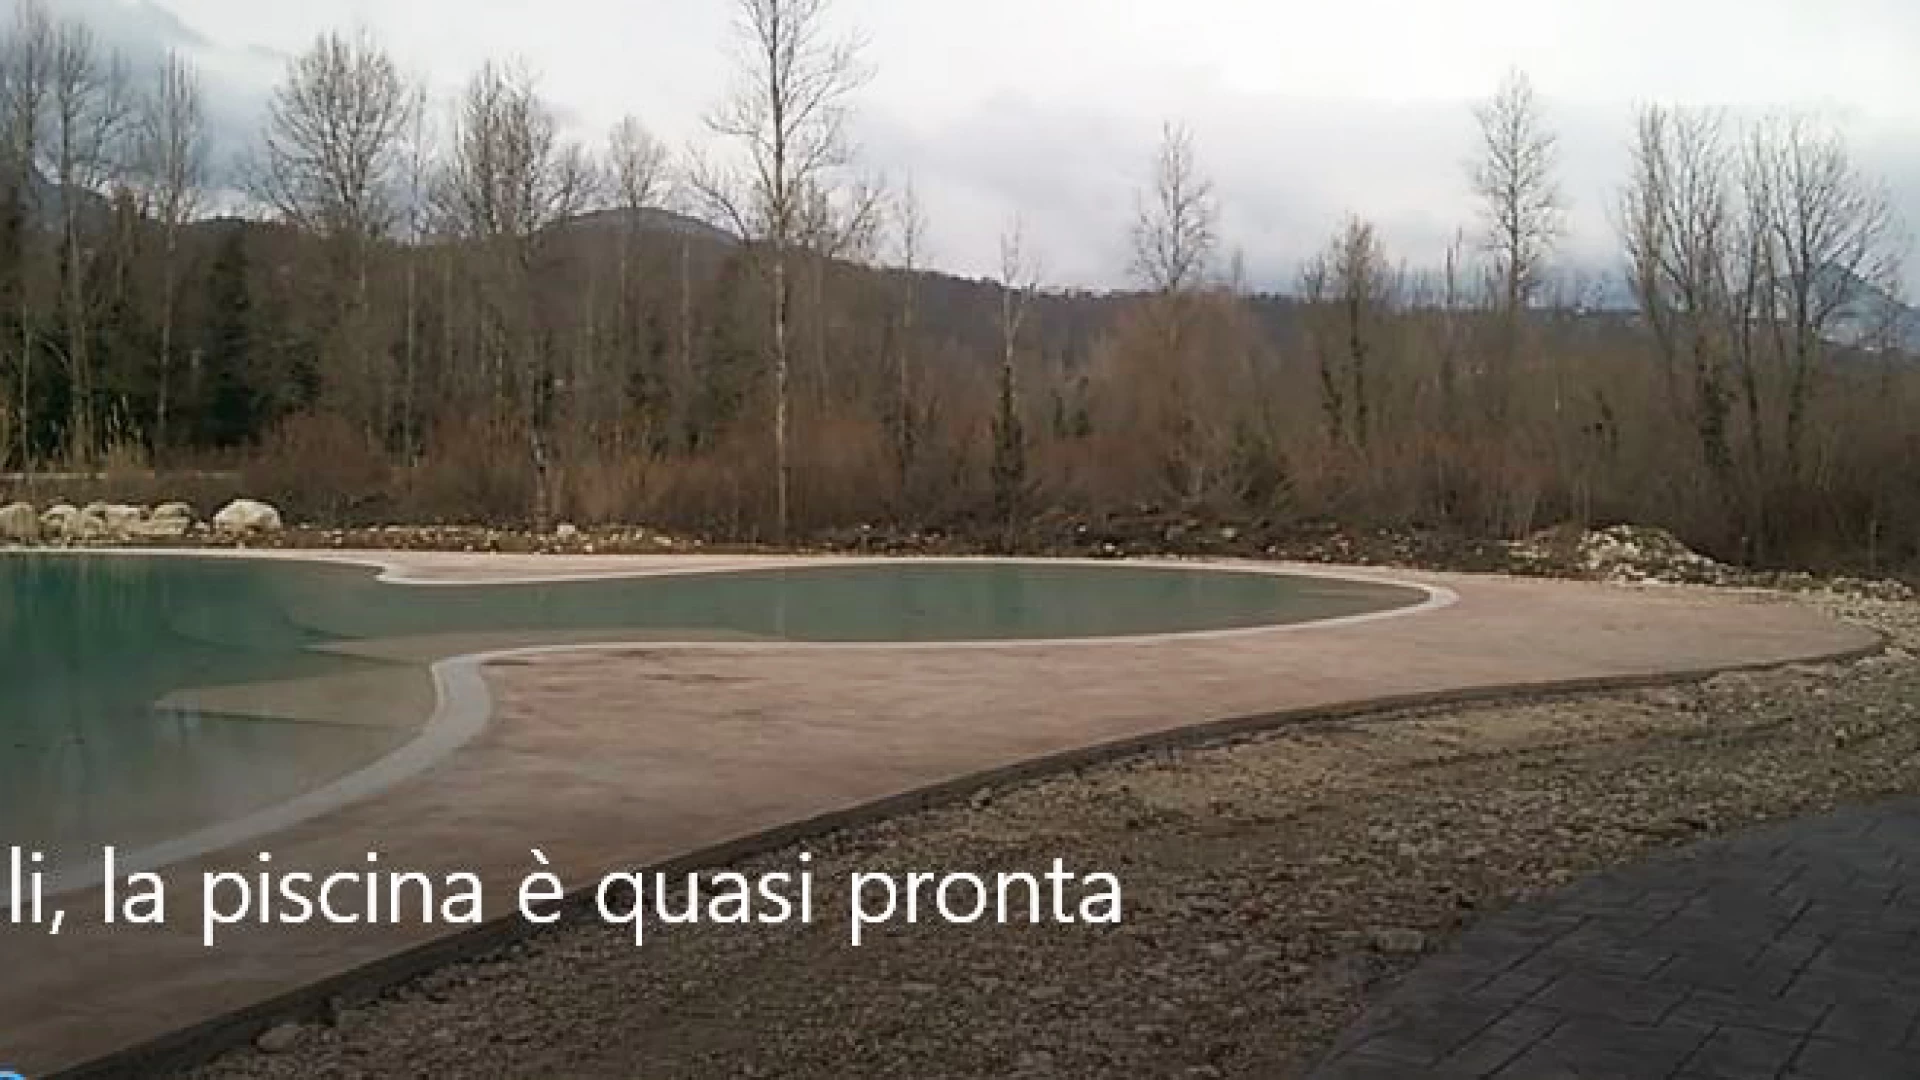 Colli, la piscina è quasi pronta. Continuano i lavori presso il parco fluviale del Volturno. Guarda il servizio video.